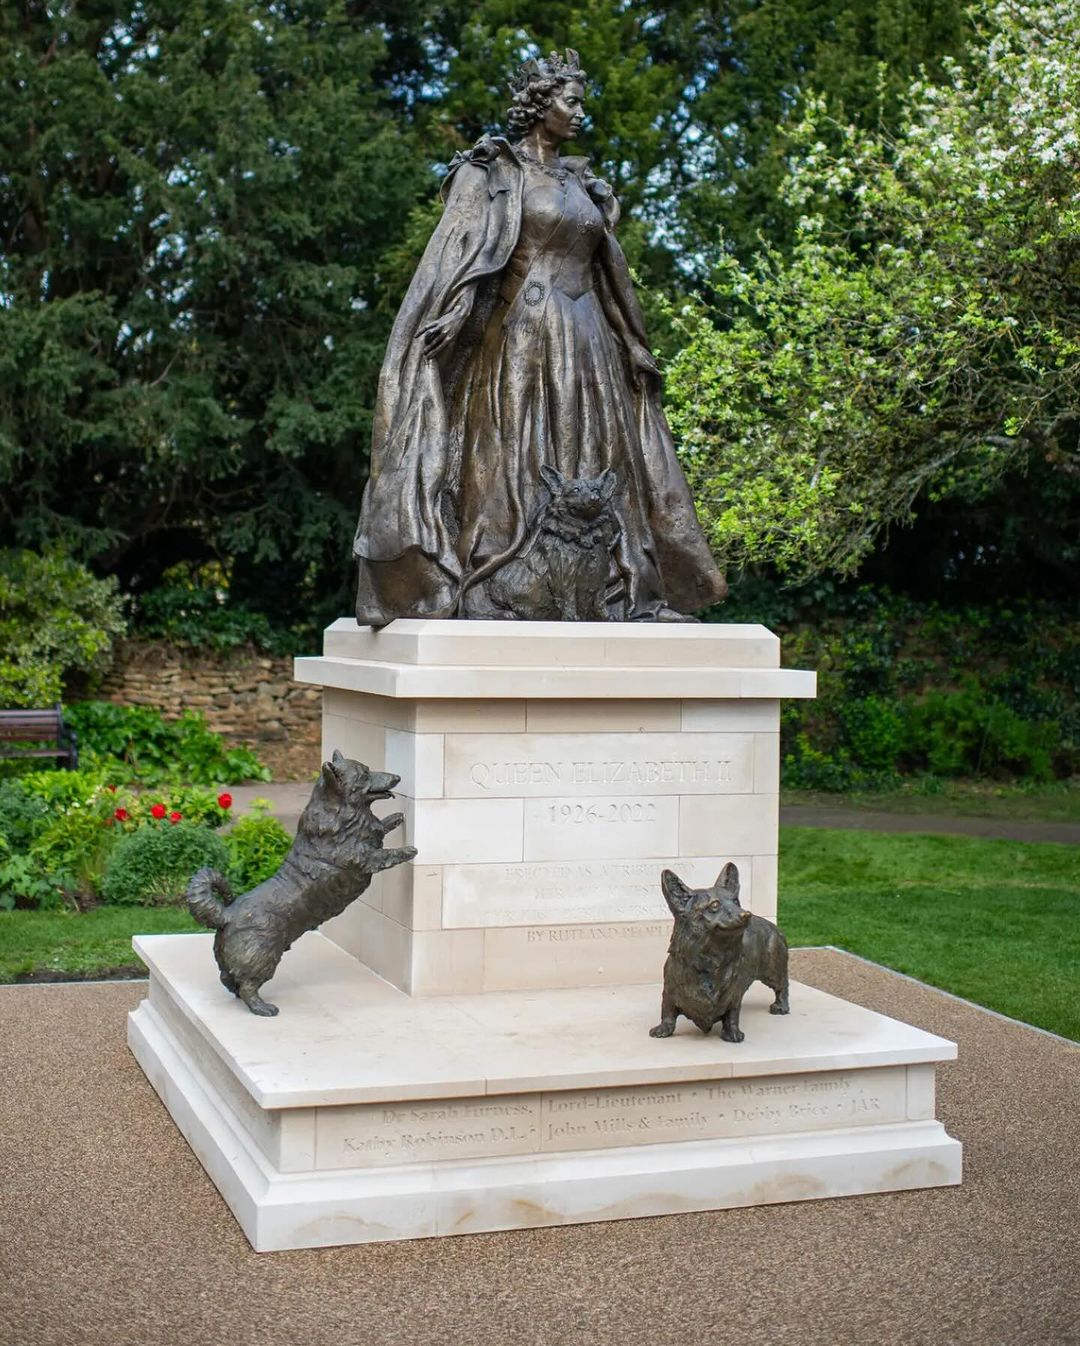 Αποκαλύφθηκε το πρώτο αναμνηστικό άγαλμα της Βασίλισσας Ελισάβετ Β' και τα 3 σκυλάκια της